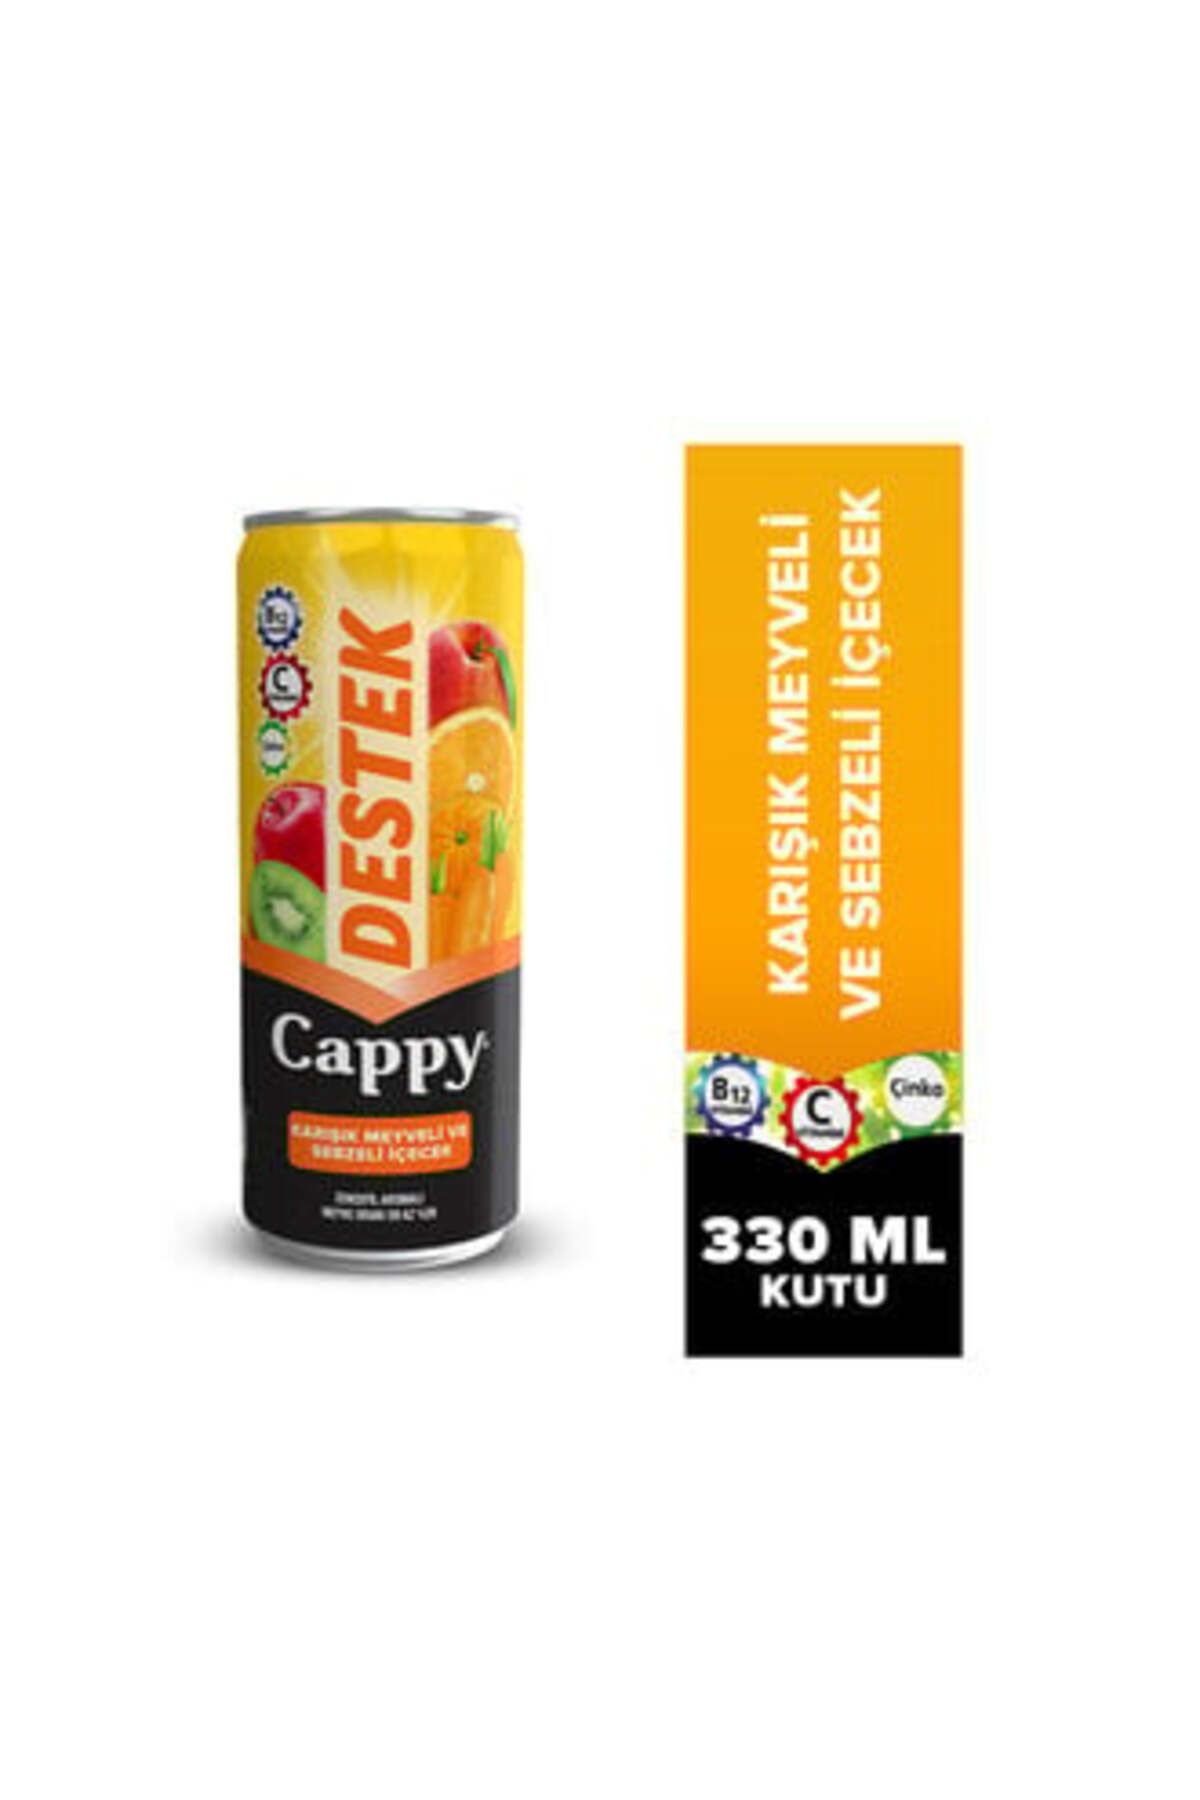 Cappy Destek Karışık Meyveli ve Sebzeli İçecek Kutu 330 Ml ( 1 ADET )